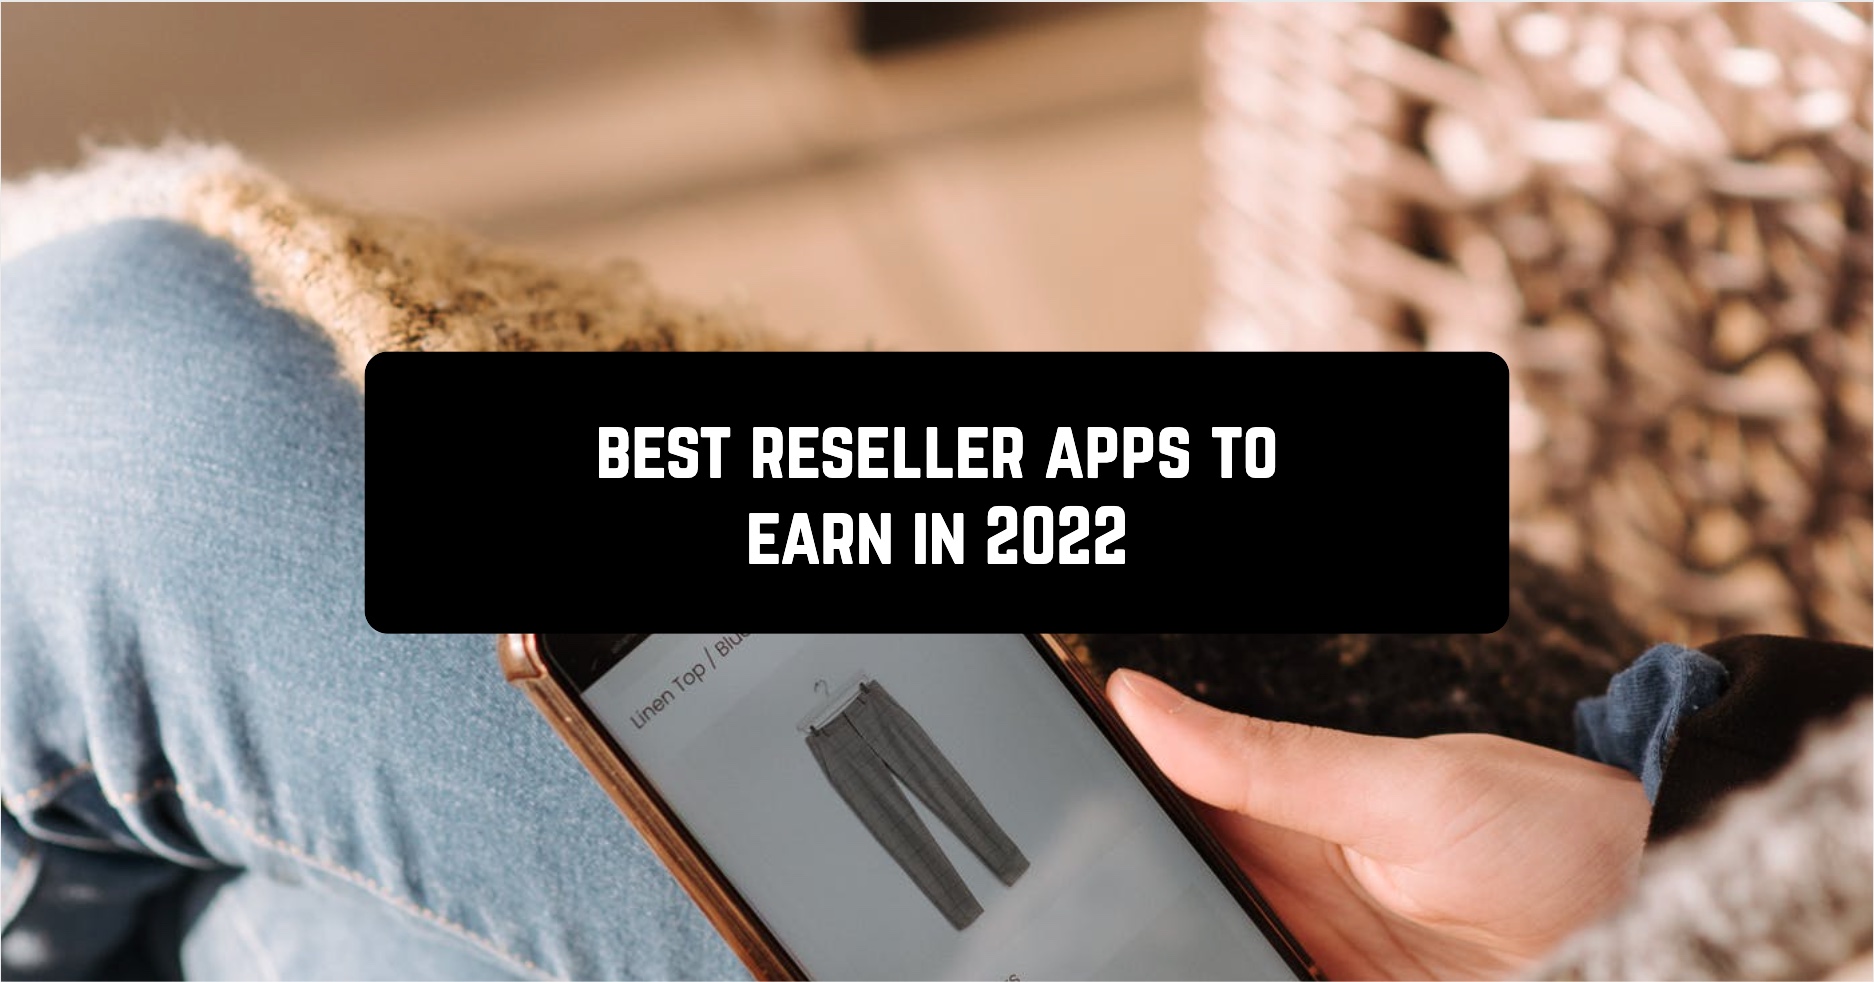 Best reseller apps to earn in 2022